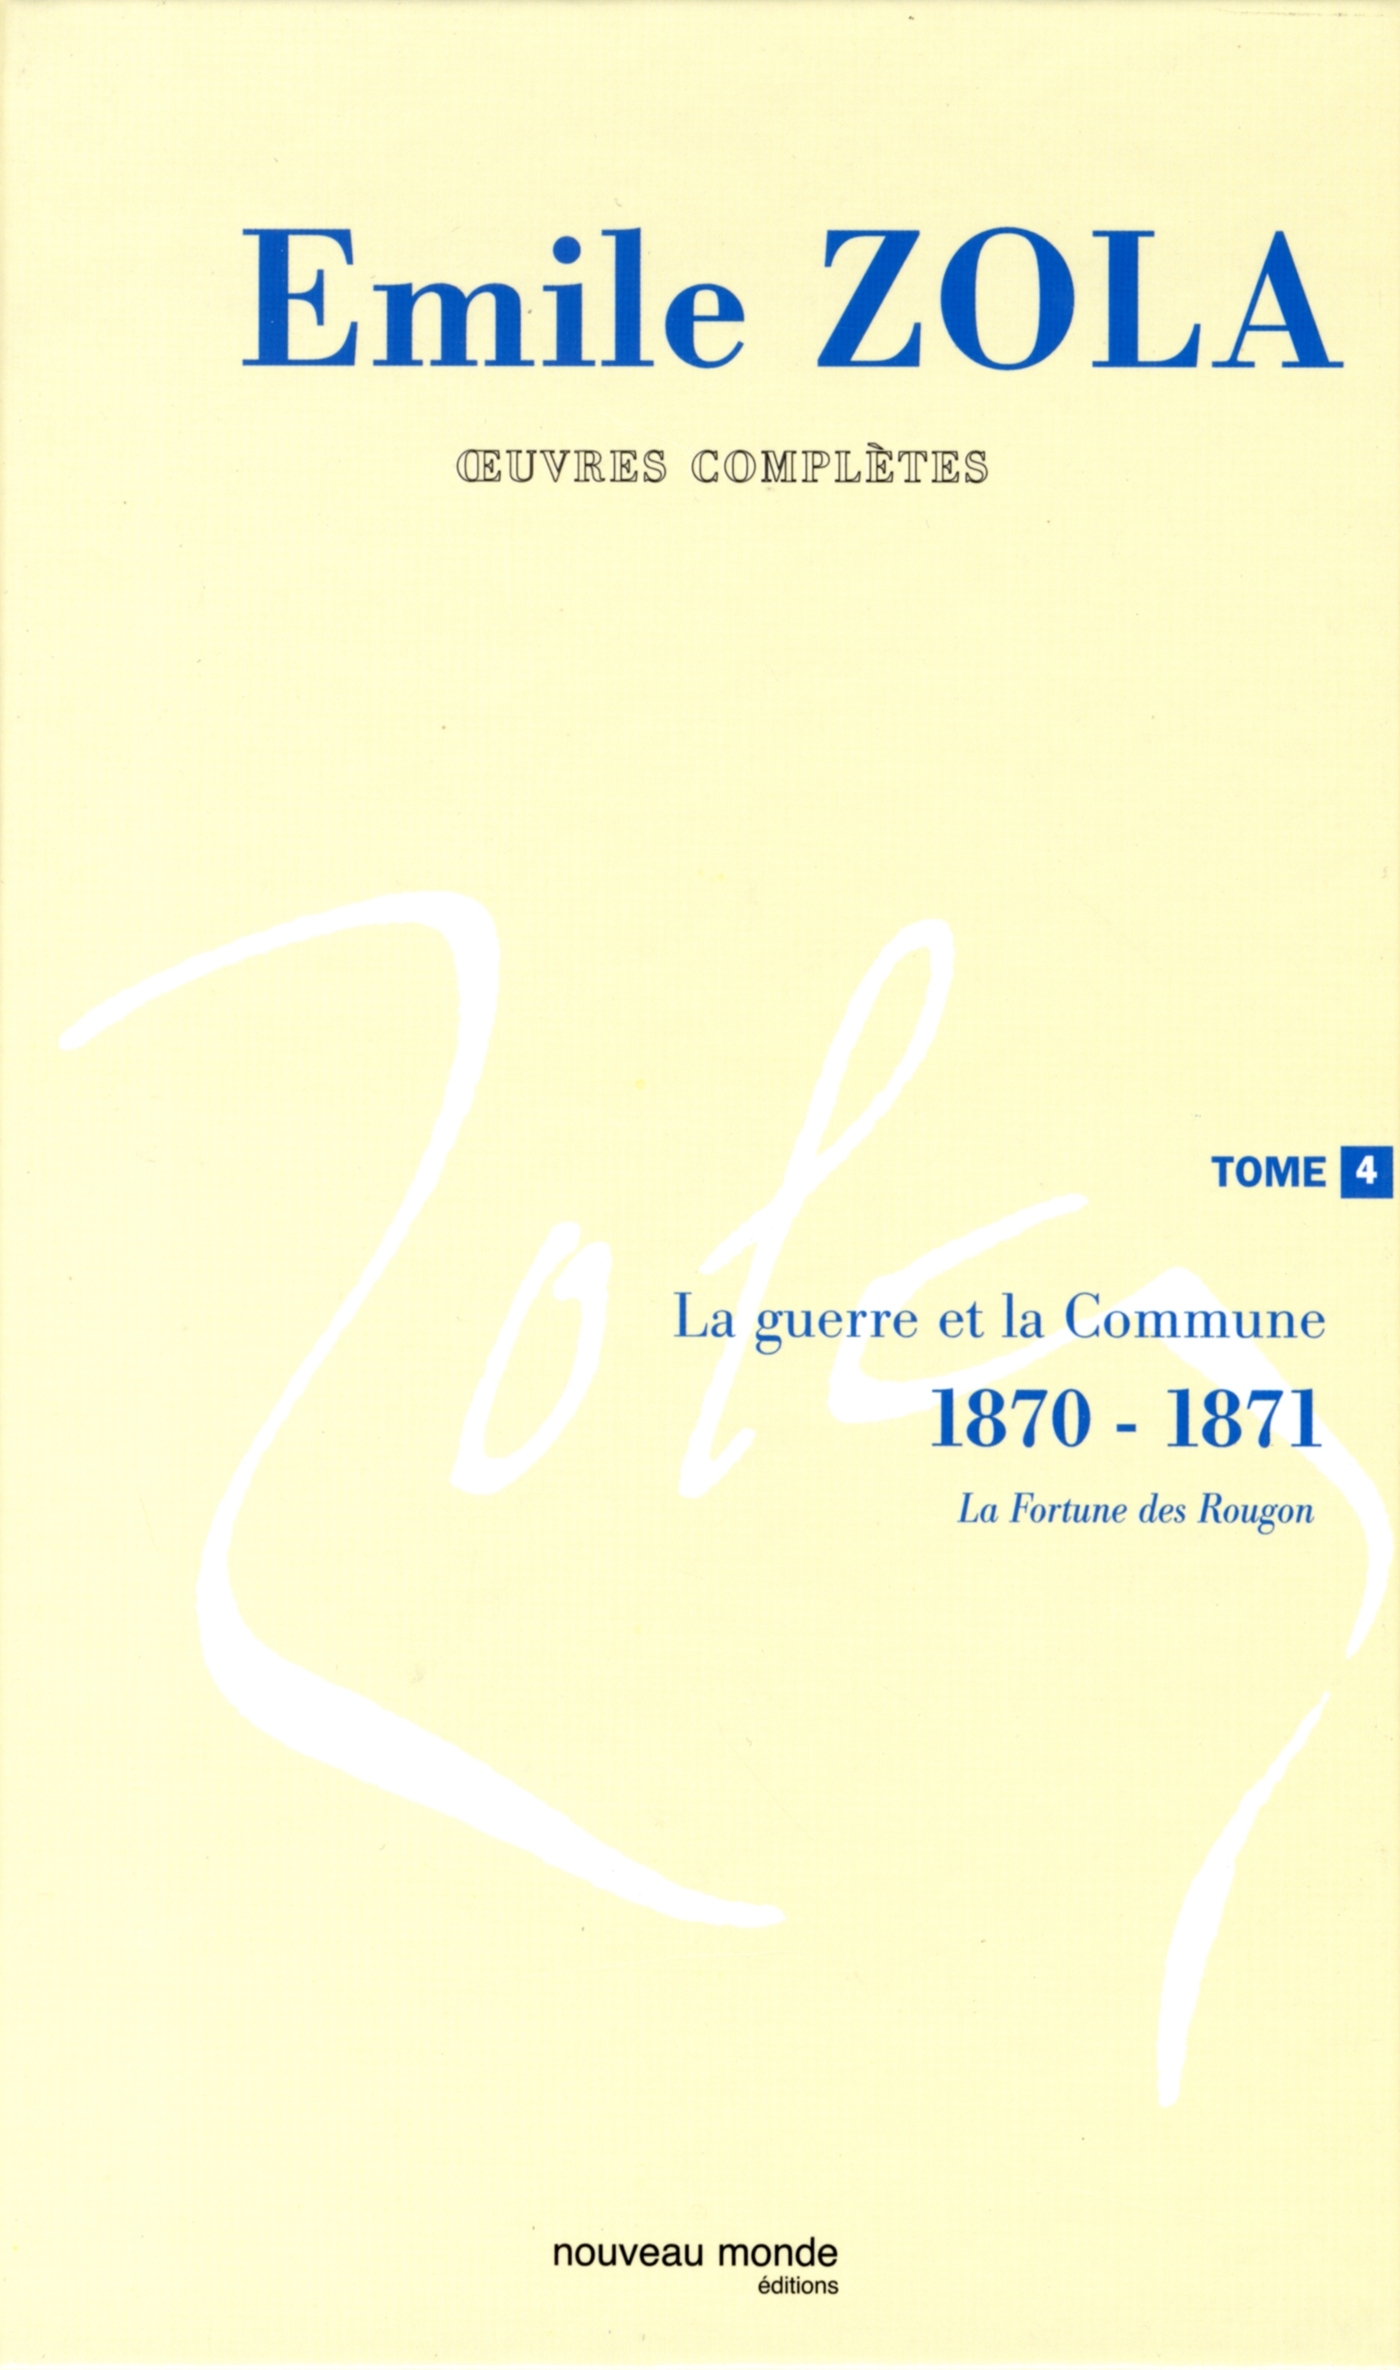 Oeuvres complètes d'Emile Zola, tome 4, La Guerre et la Commune (1870-1871) (9782847360202-front-cover)